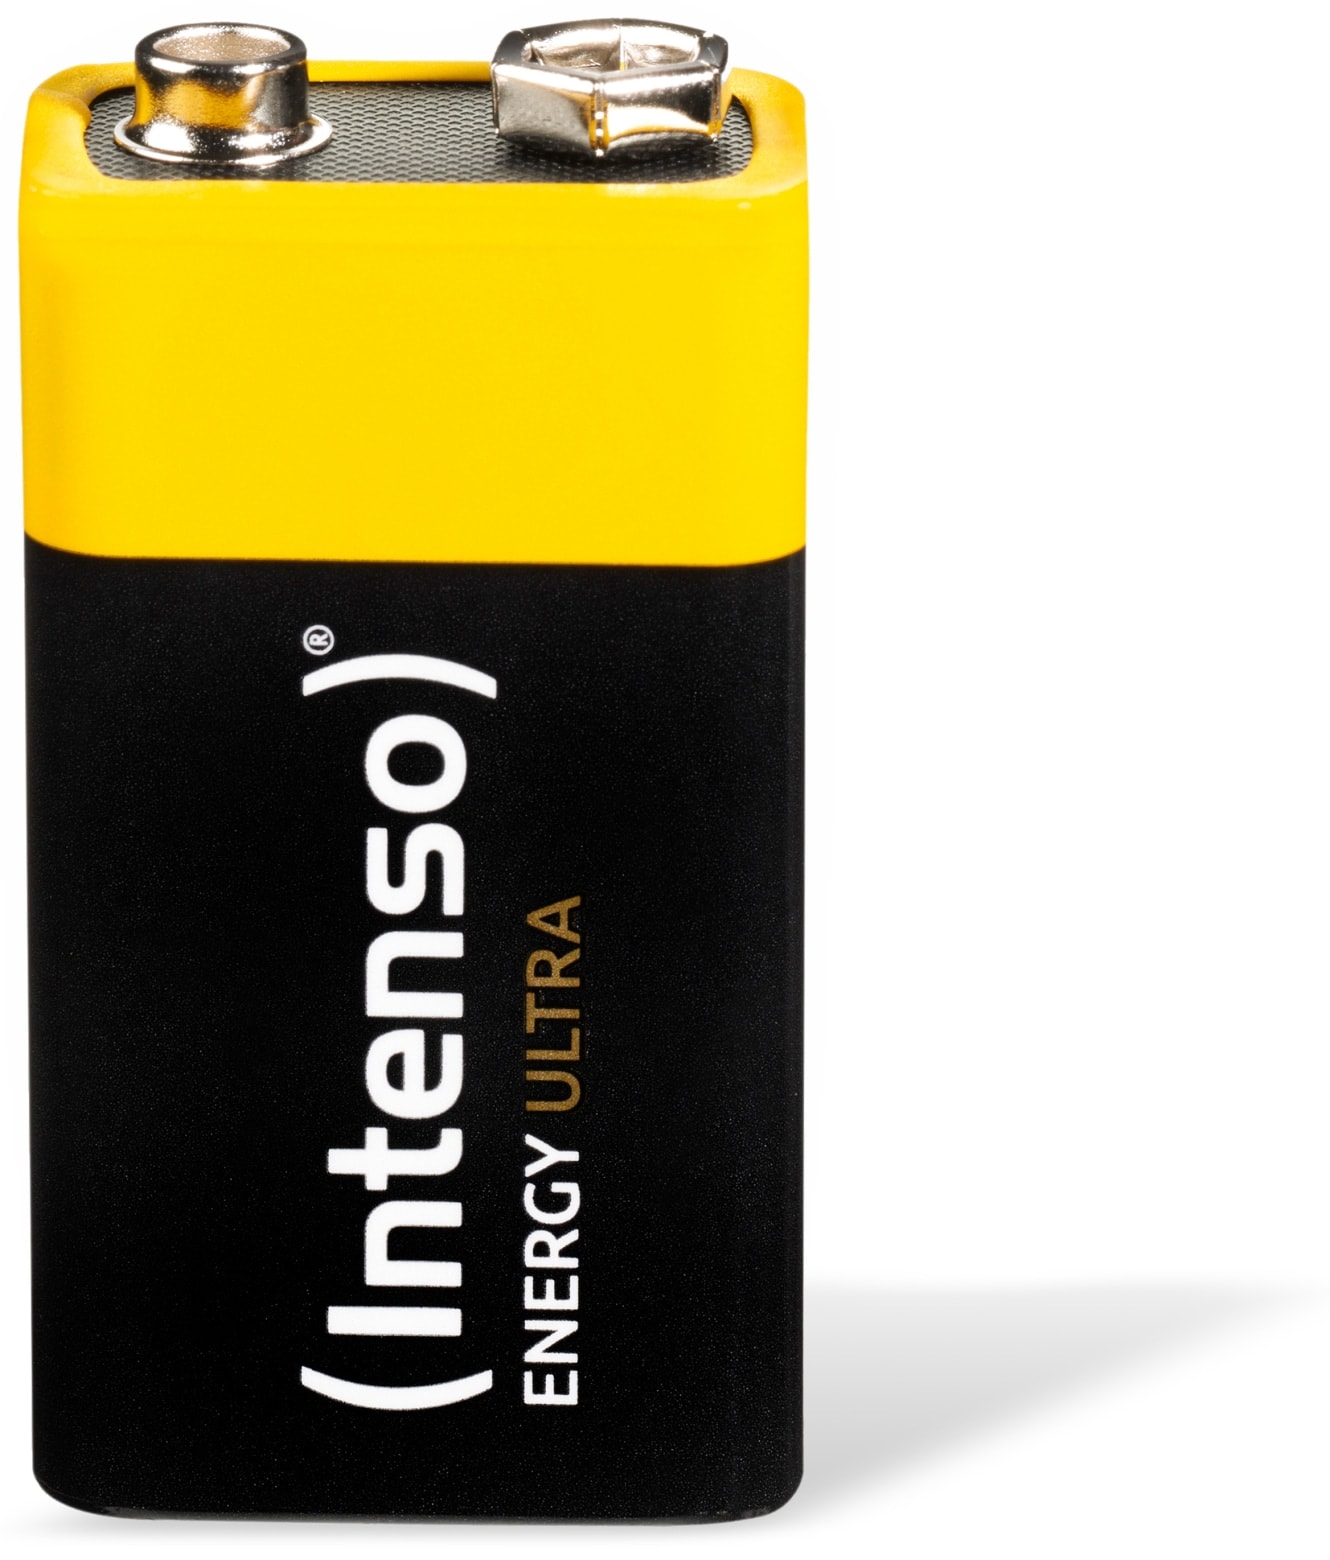 INTENSO Batterie Energy Ultra, 9V 6LR61, E-Block